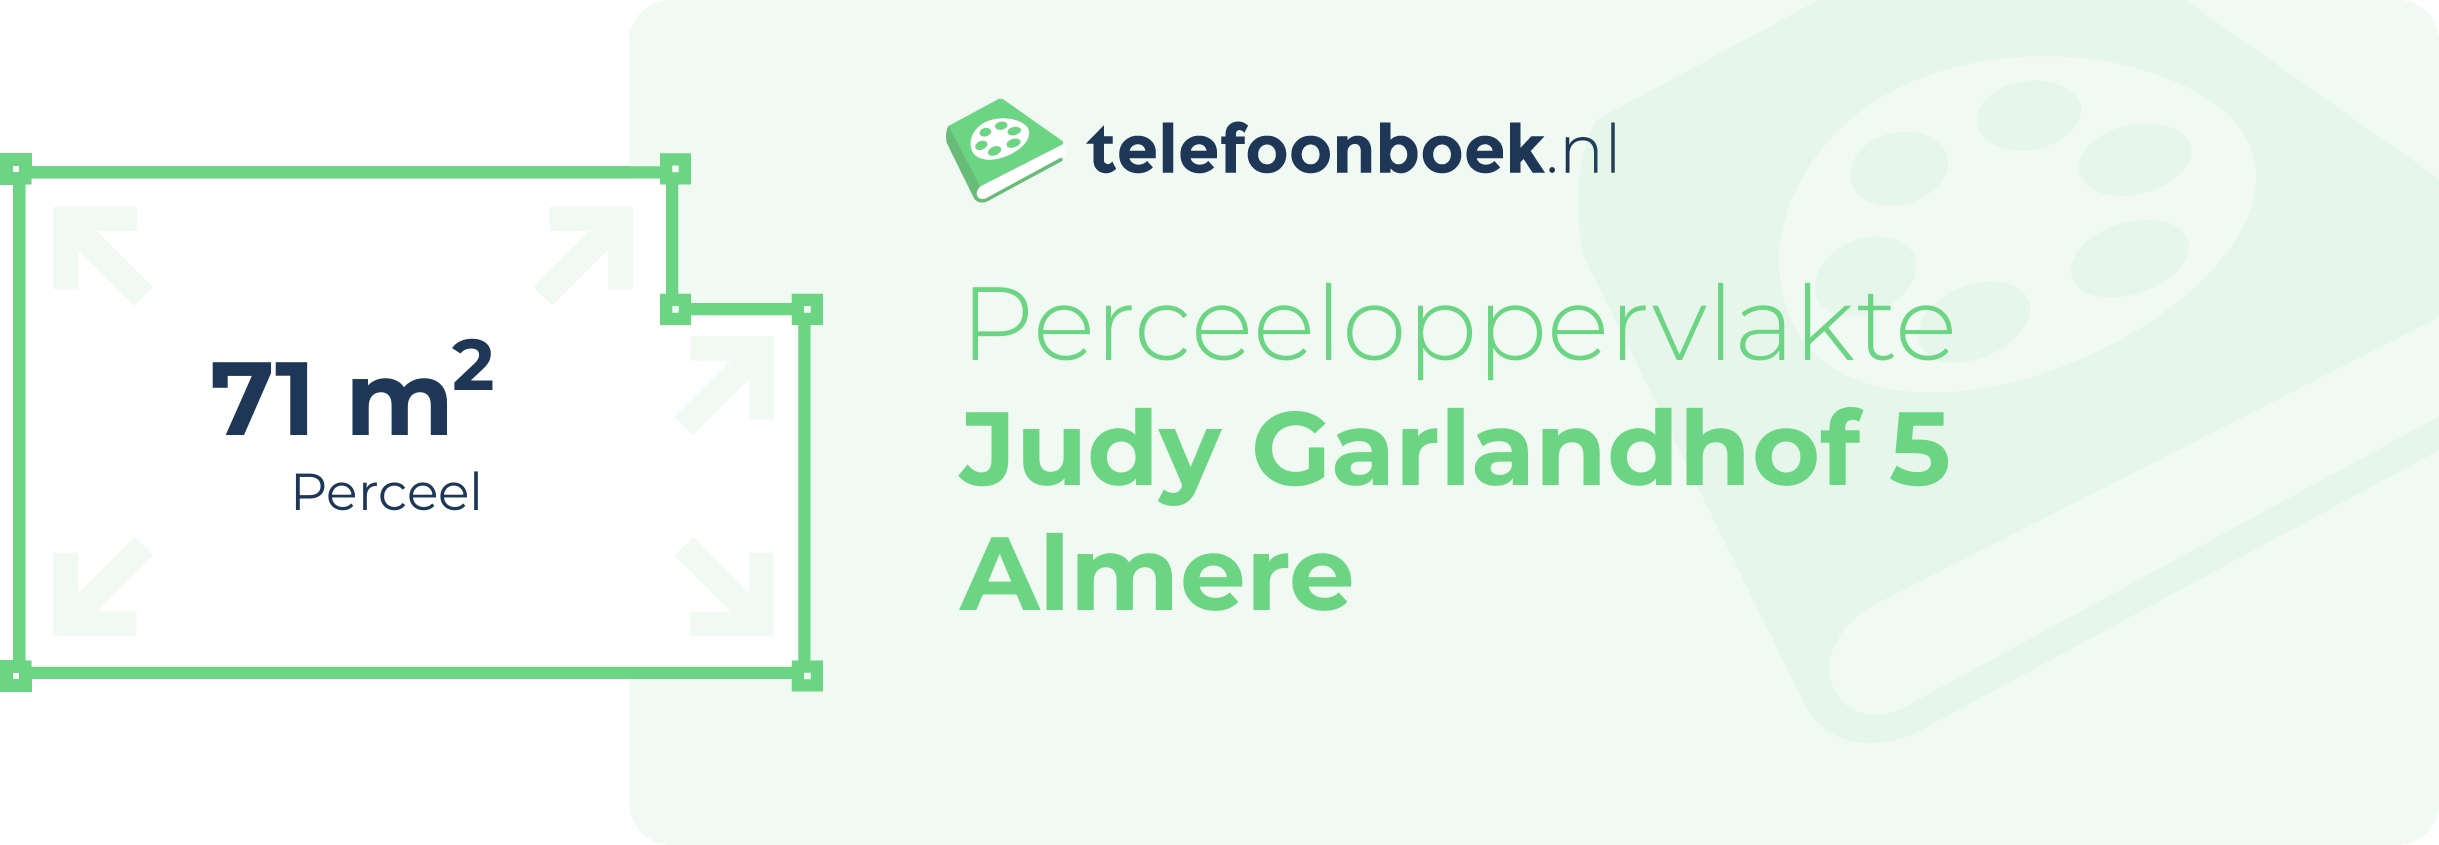 Perceeloppervlakte Judy Garlandhof 5 Almere